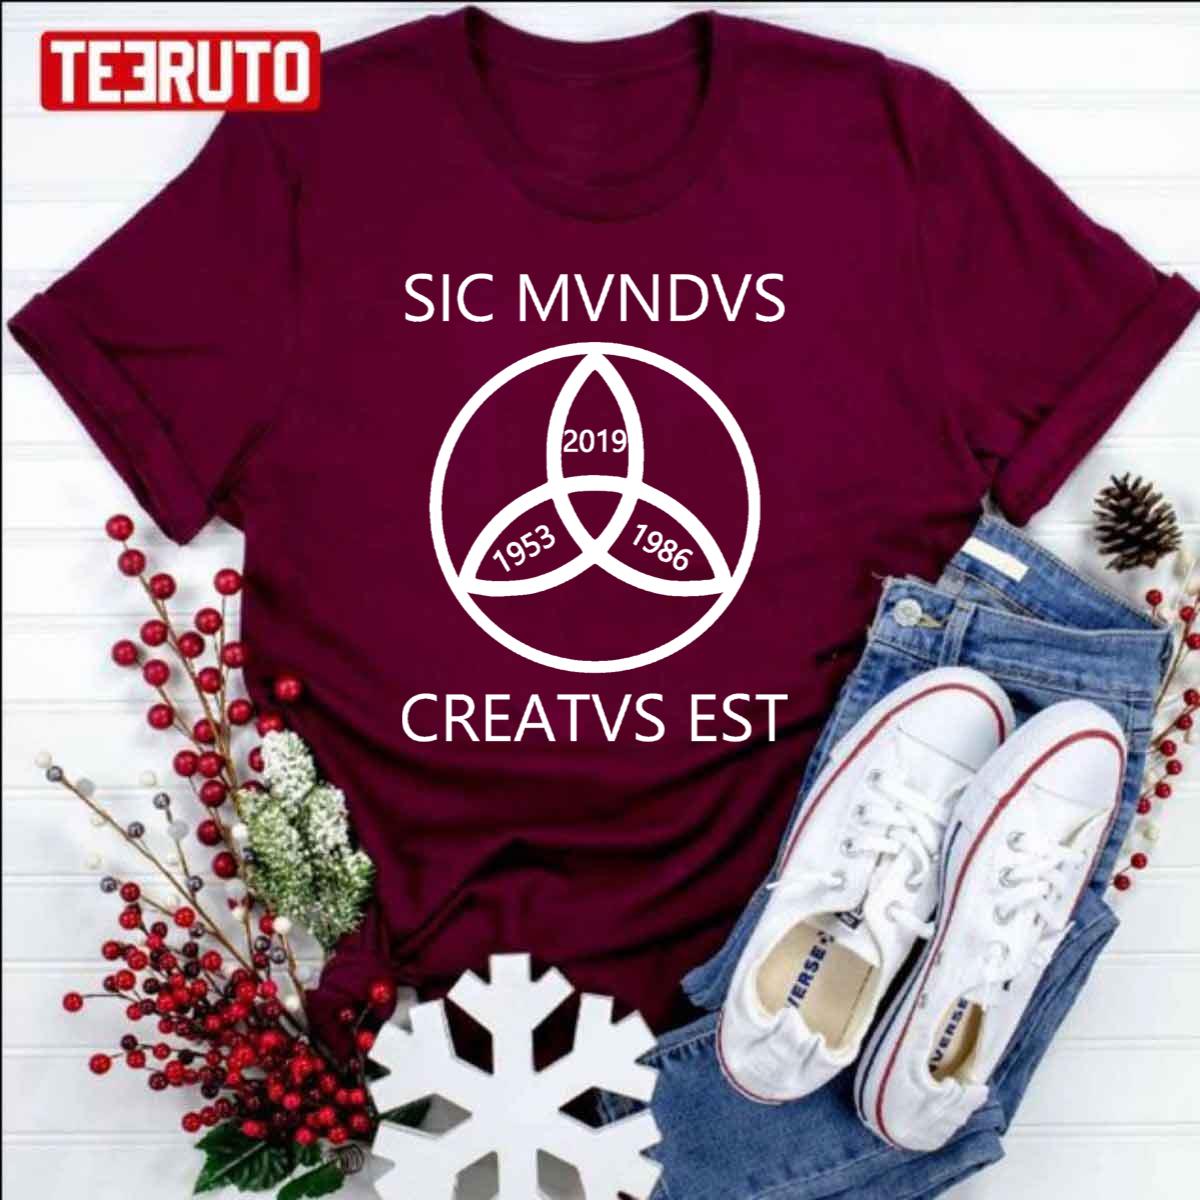 Sic Mundus Creatus Est Dark Unisex T-Shirt